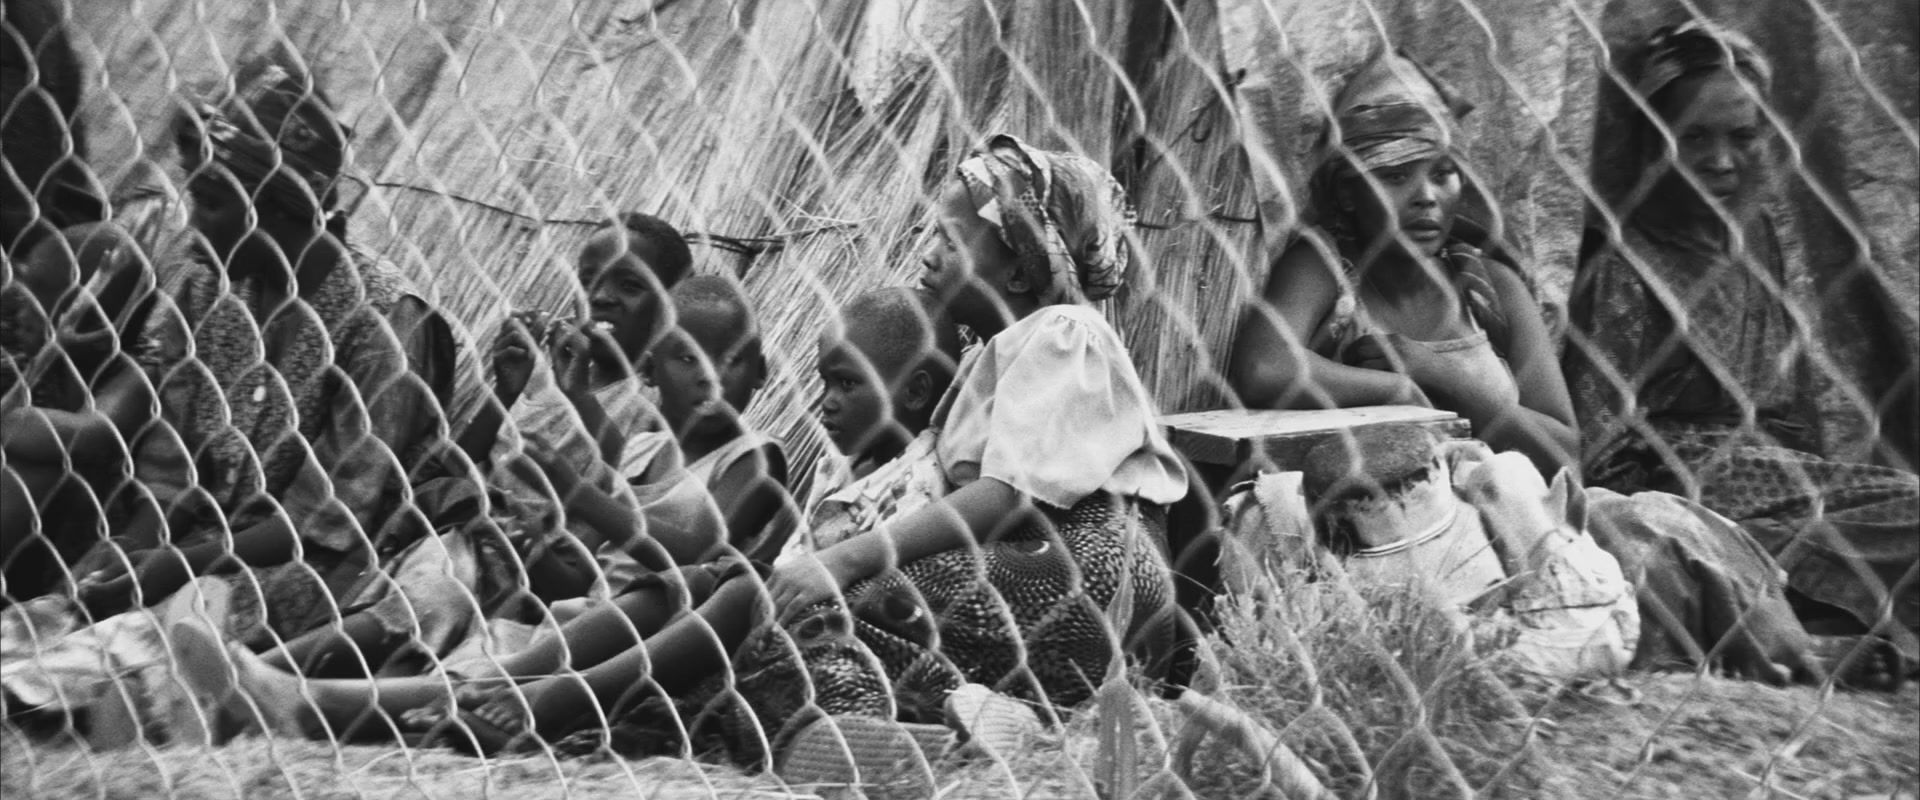 نتيجة بحث الصور عن الحرب الأهلية في سيراليون